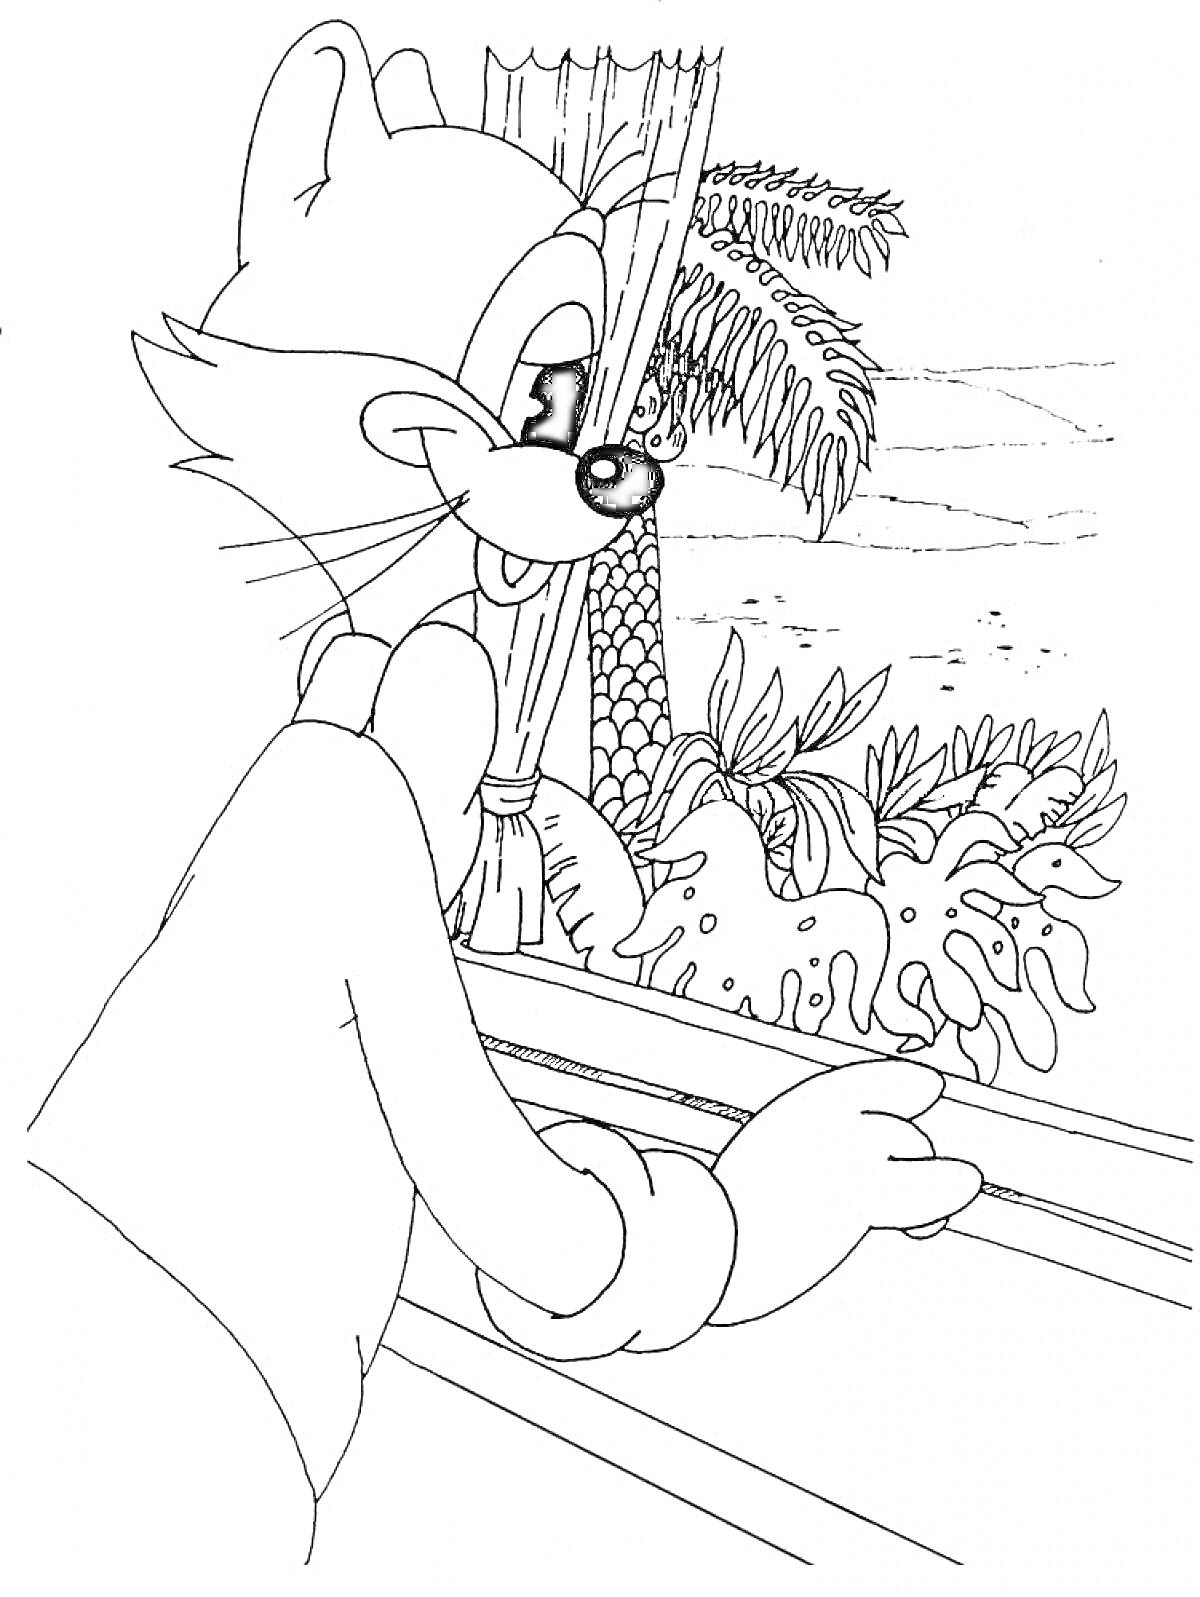 Кот Леопольд у окна, смотрящий на пальму и кустарники за окном